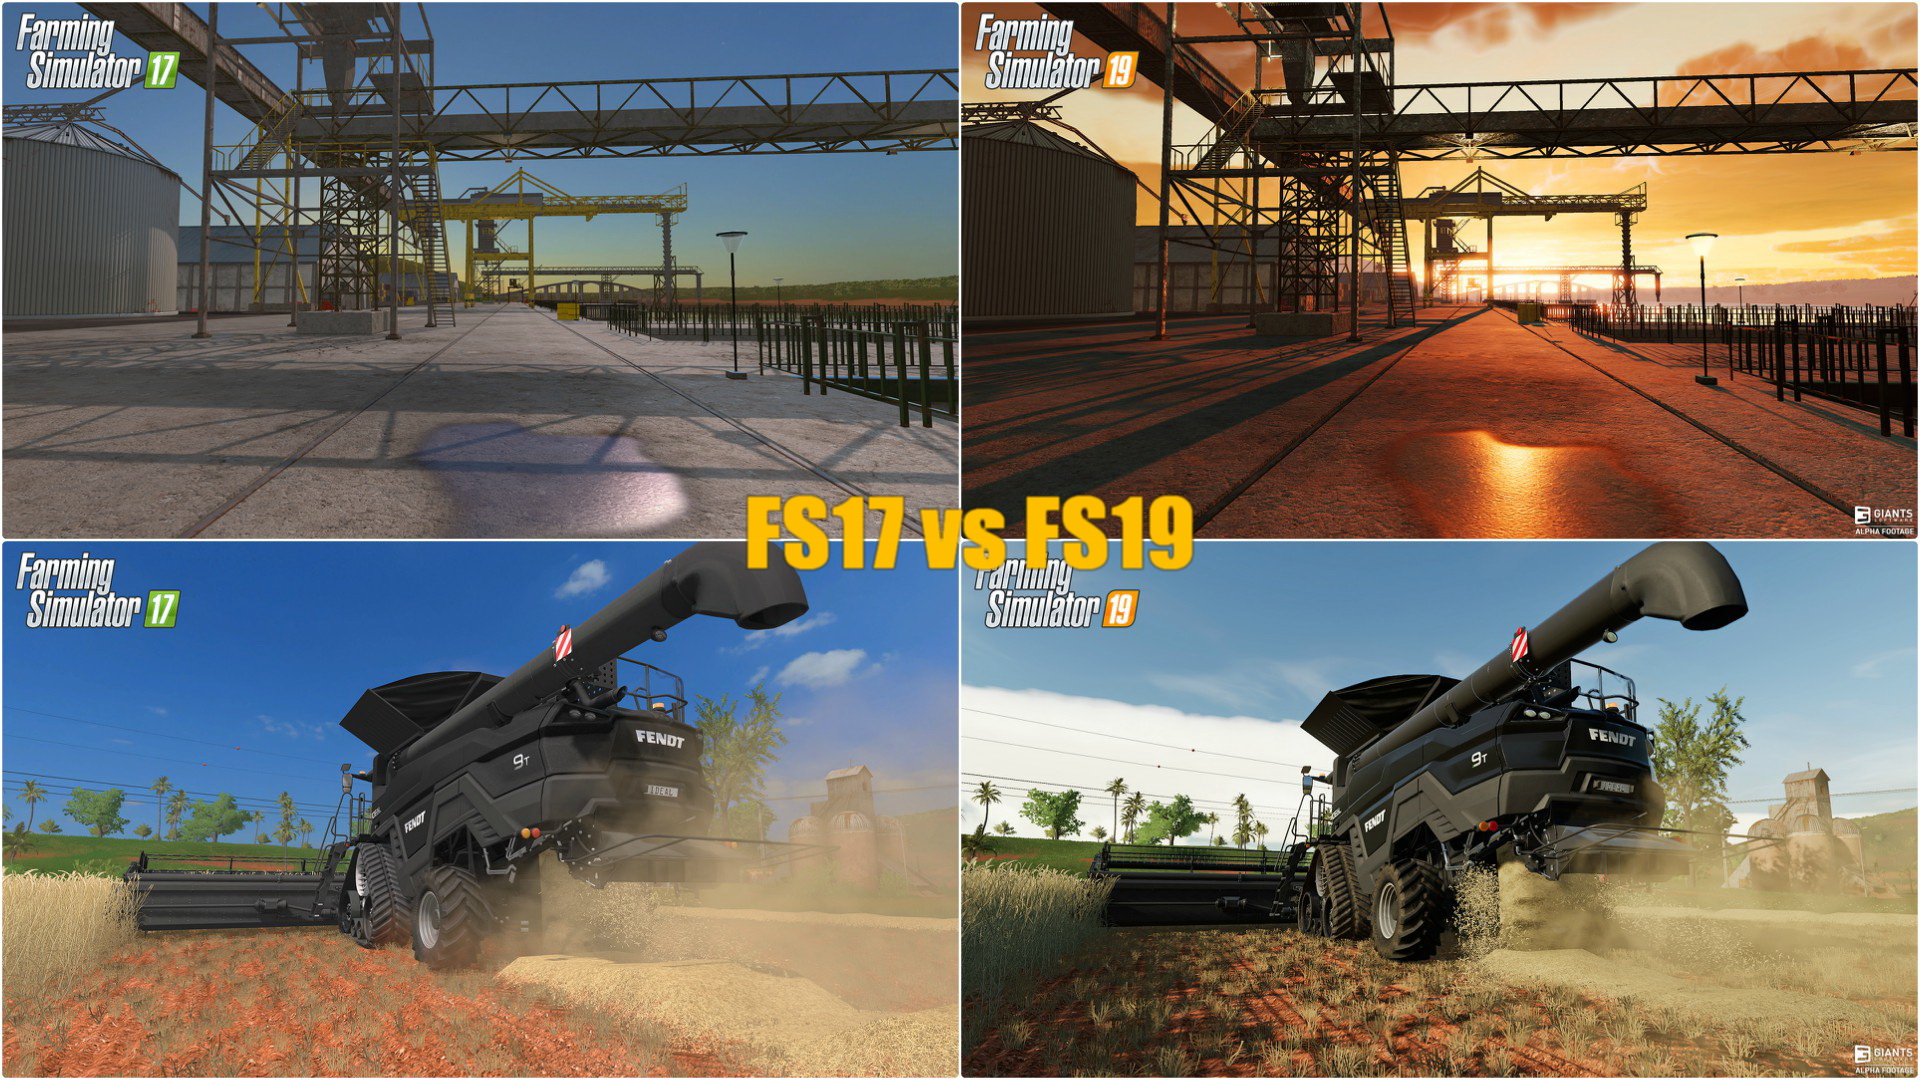 FS17 vs FS19: Graphic game comparison